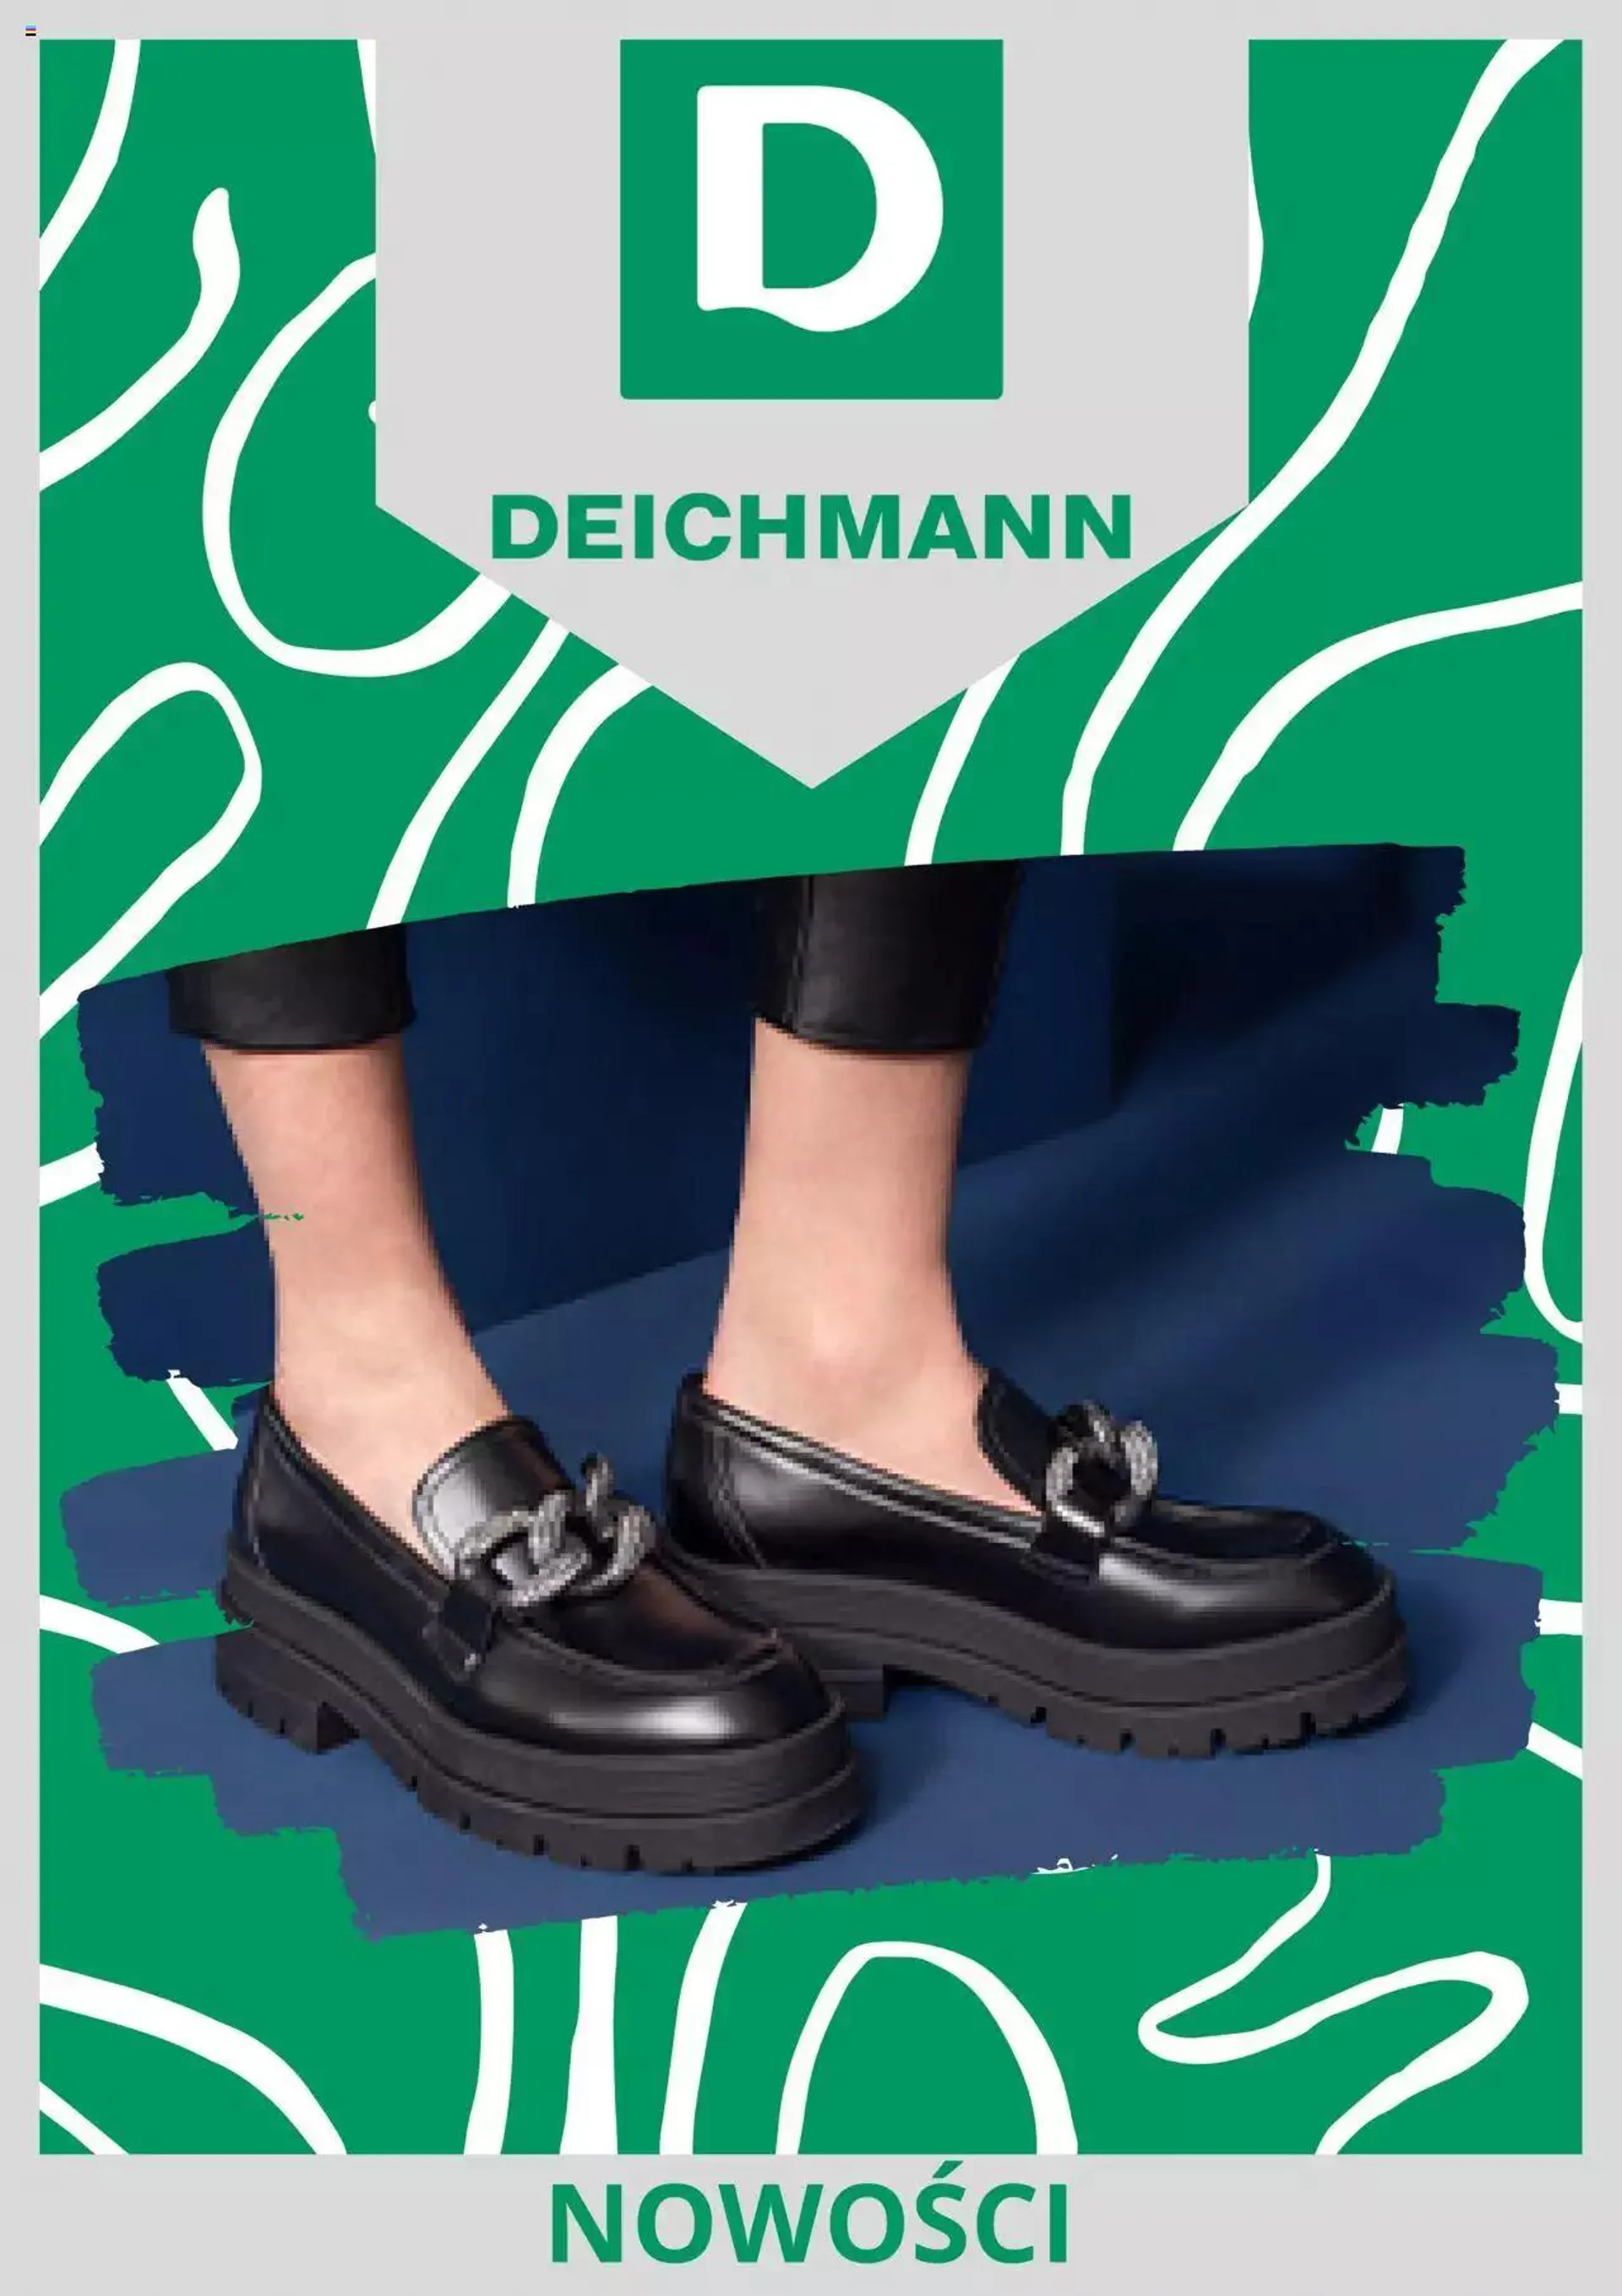 Deichmann - Promocja